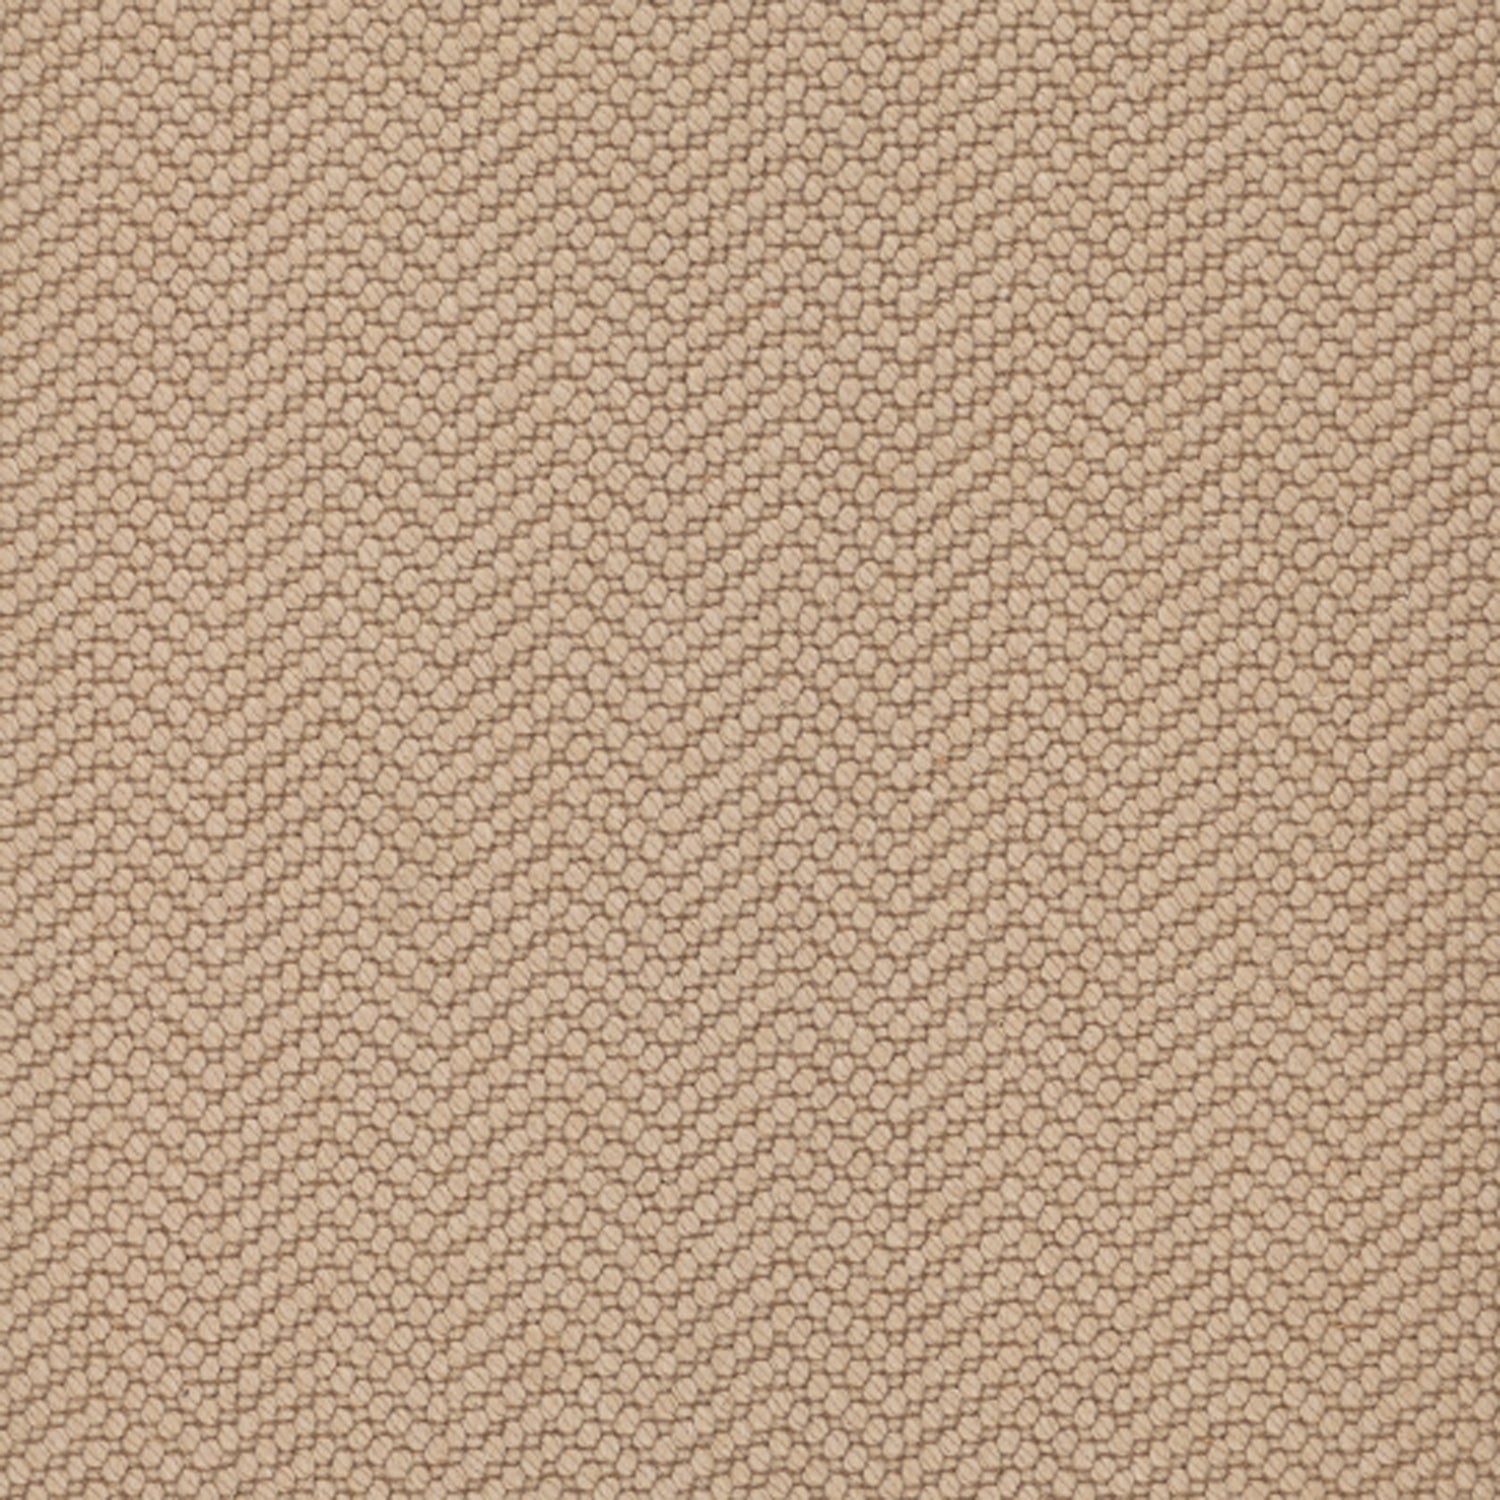 Wool broadloom carpet swatch in a dimensional herringbone weave in beige.